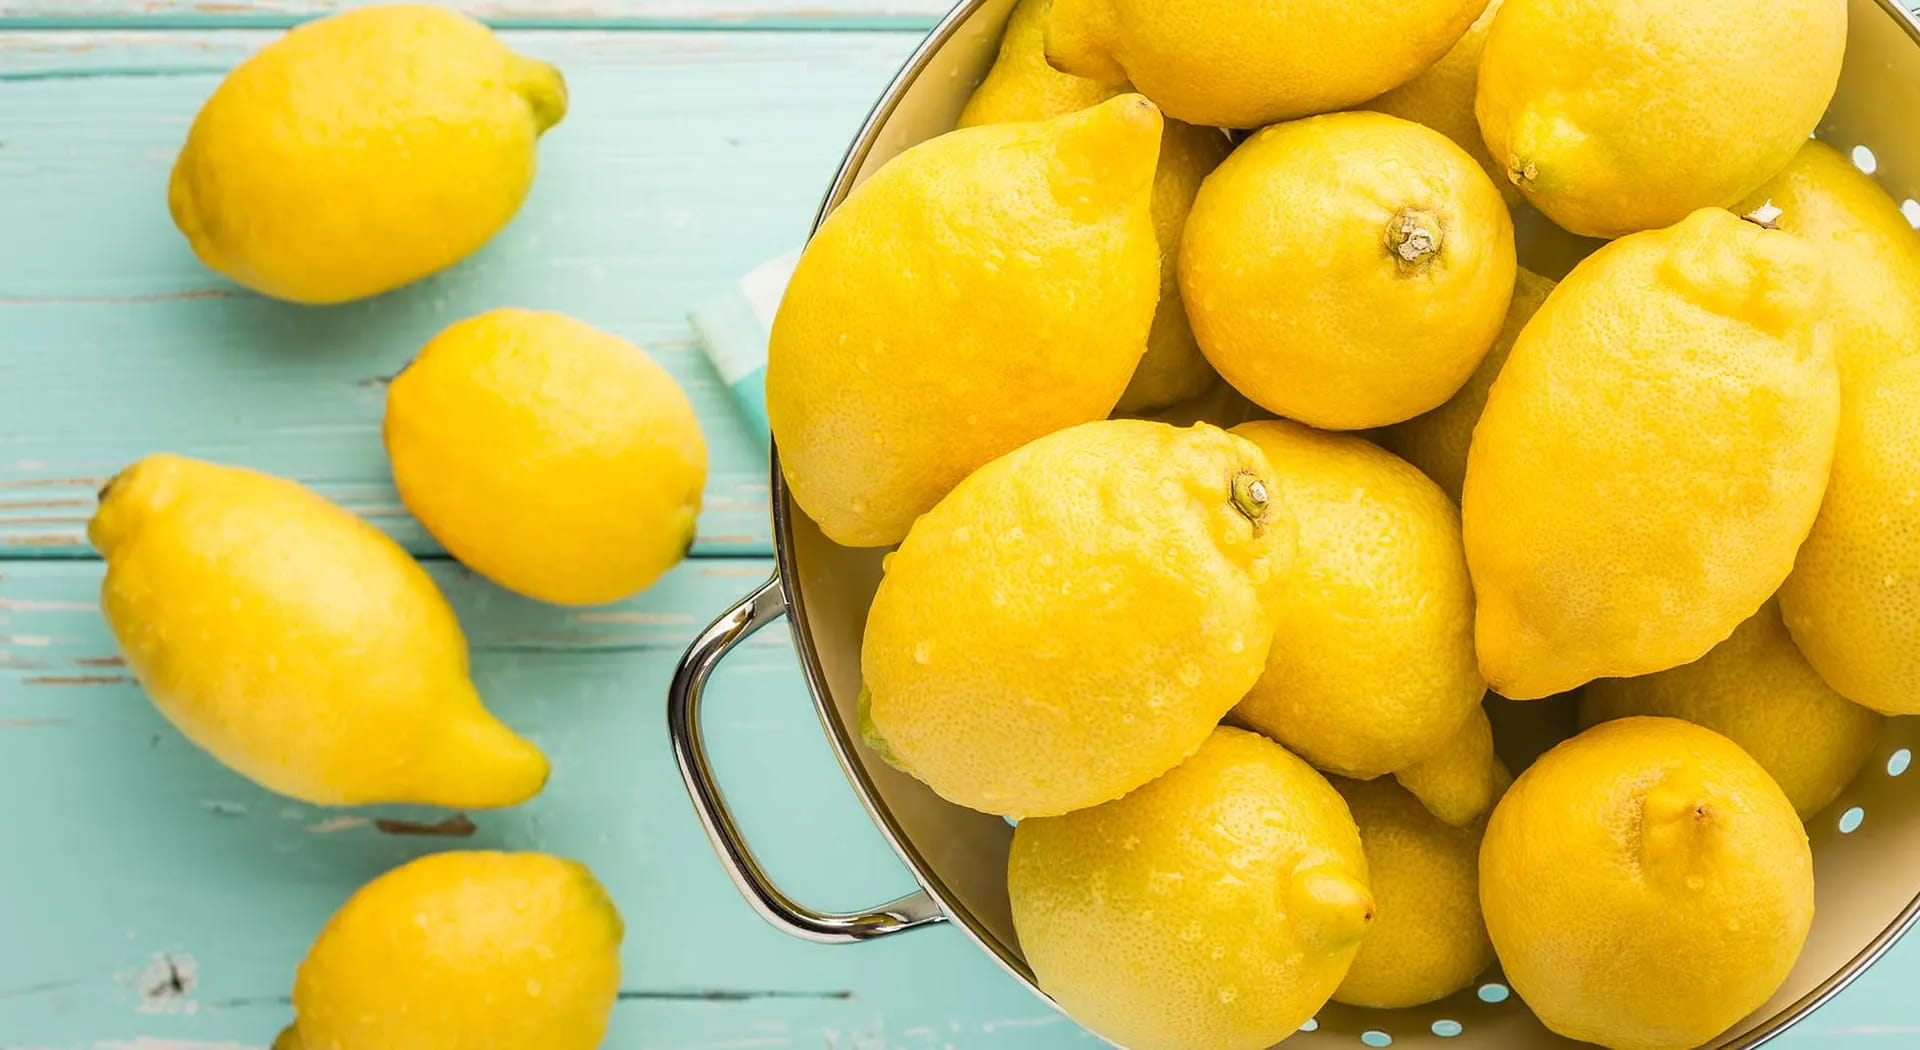 Usi del limone in cucina: 10 usi che non ti aspetti